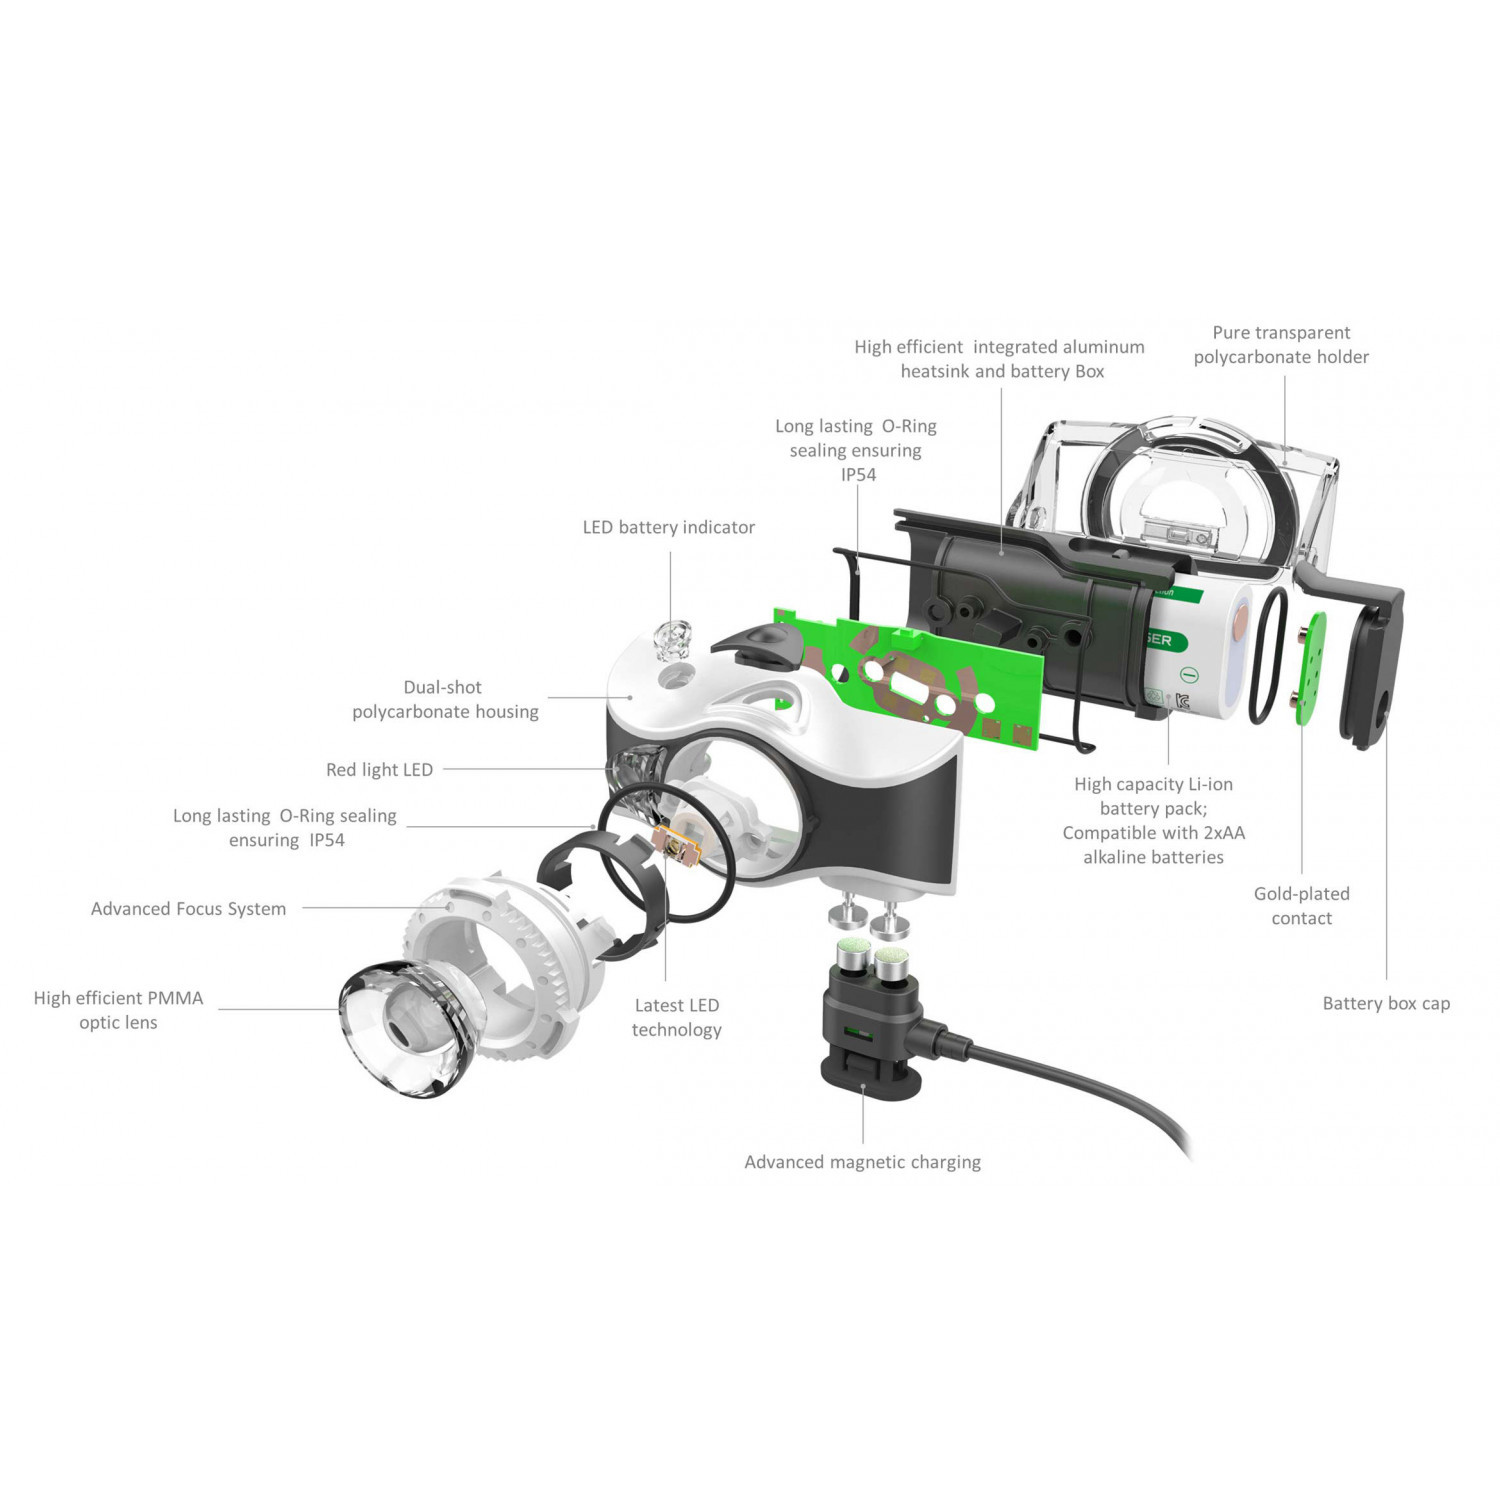 фото Фонарь светодиодный налобный led lenser mh8, черный, 600 лм, аккумулятор